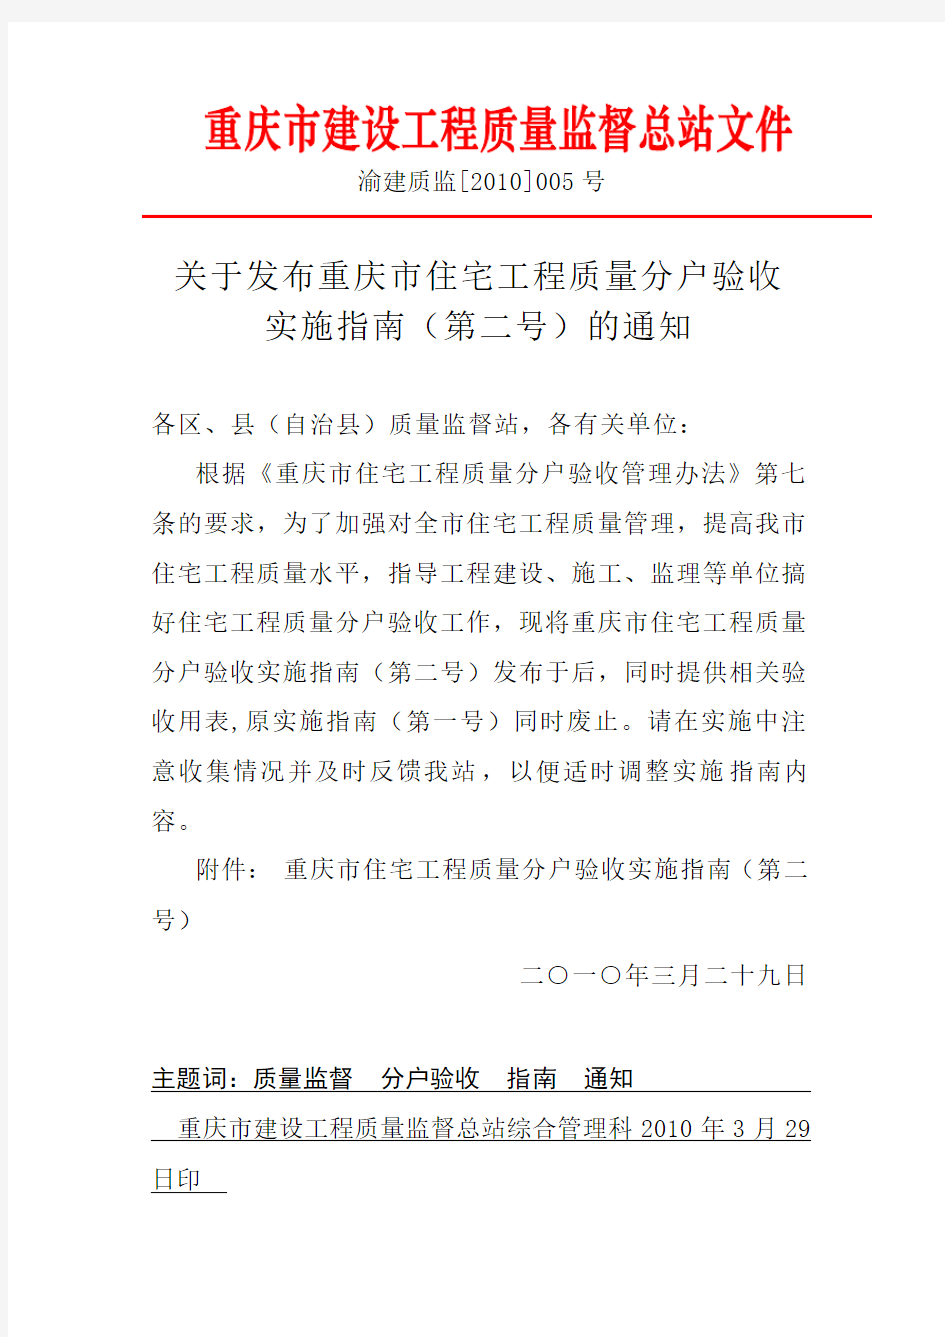 关于发布重庆市住宅工程质量分户验收实施指南(第二号)的通知